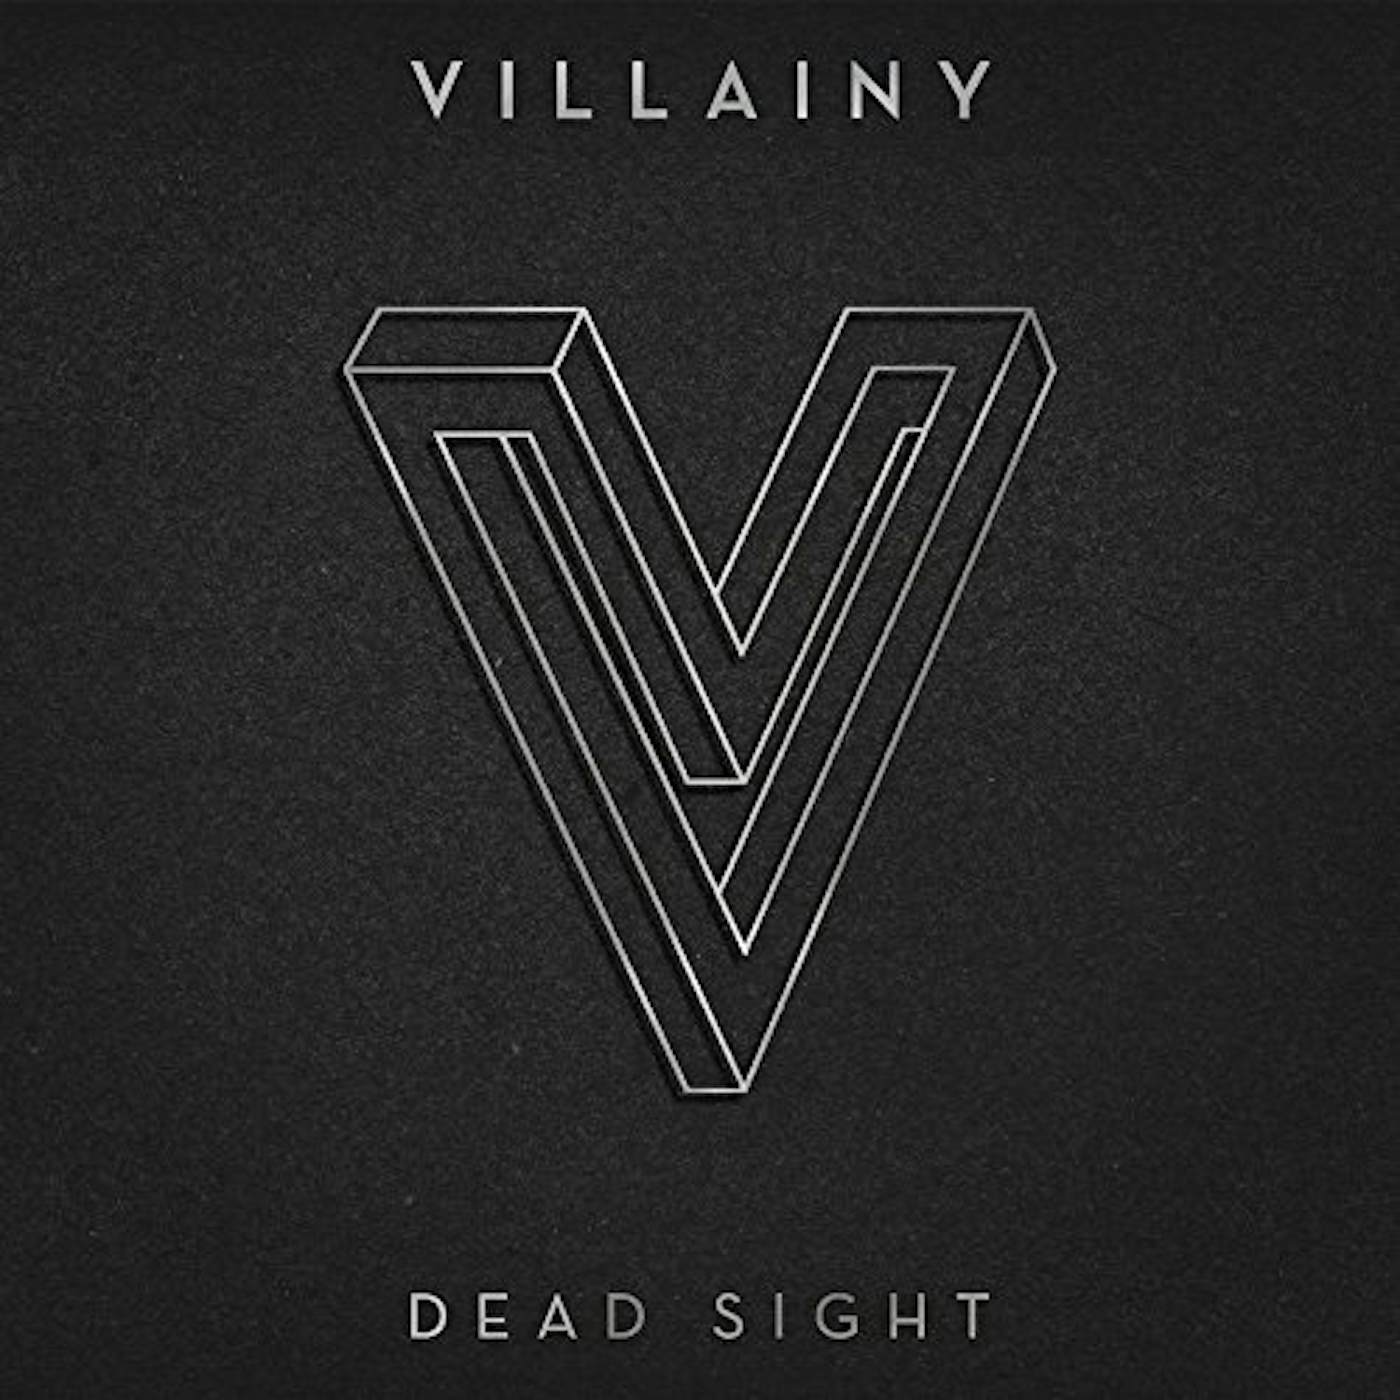 Villainy DEAD SIGHT - VINYL 2LP Vinyl Record